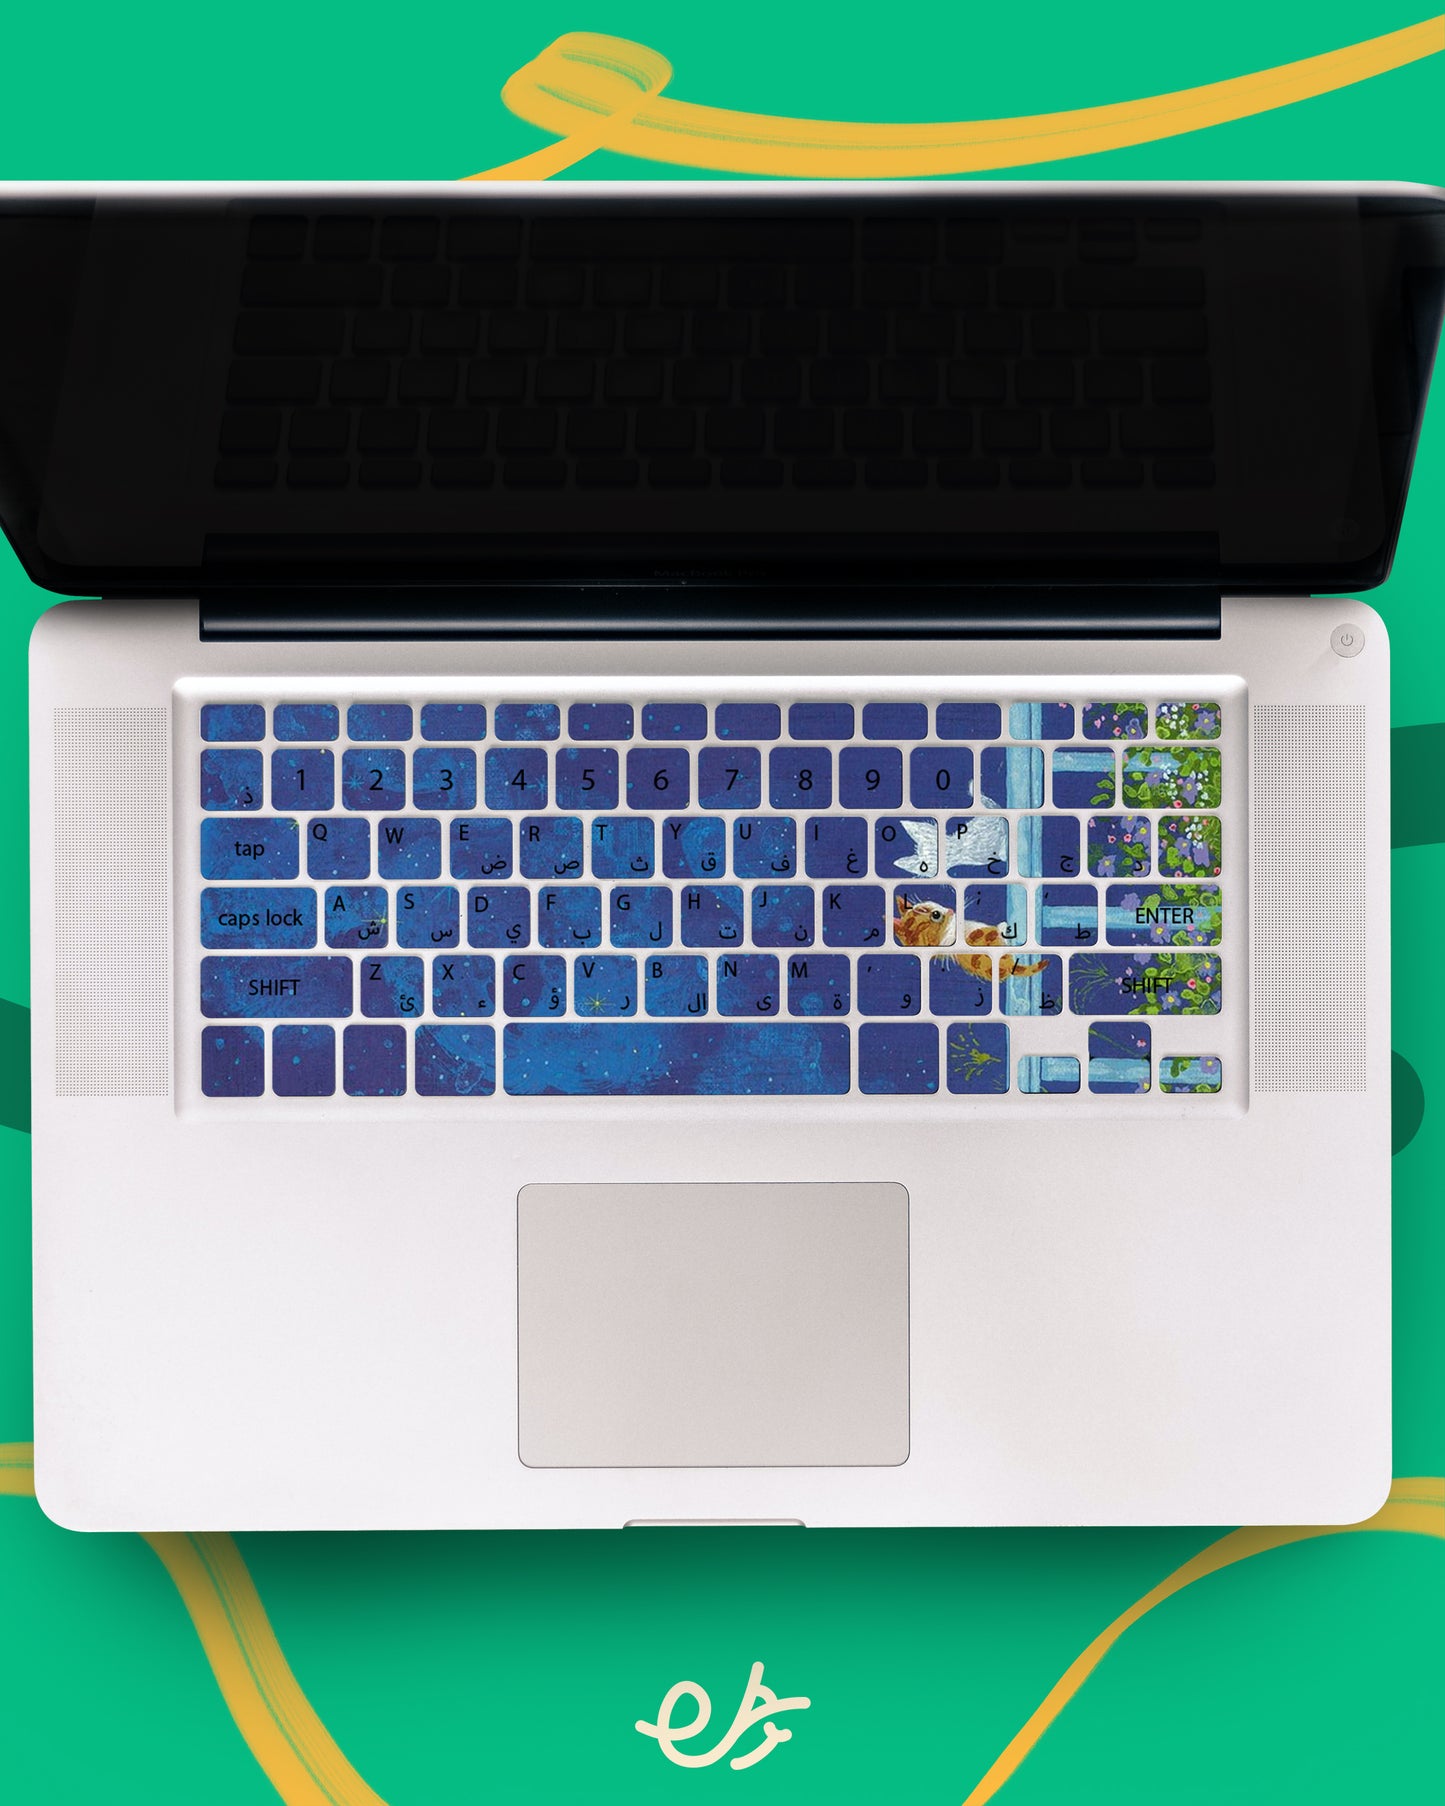 Cat Blue Laptop Keyboard Sticker